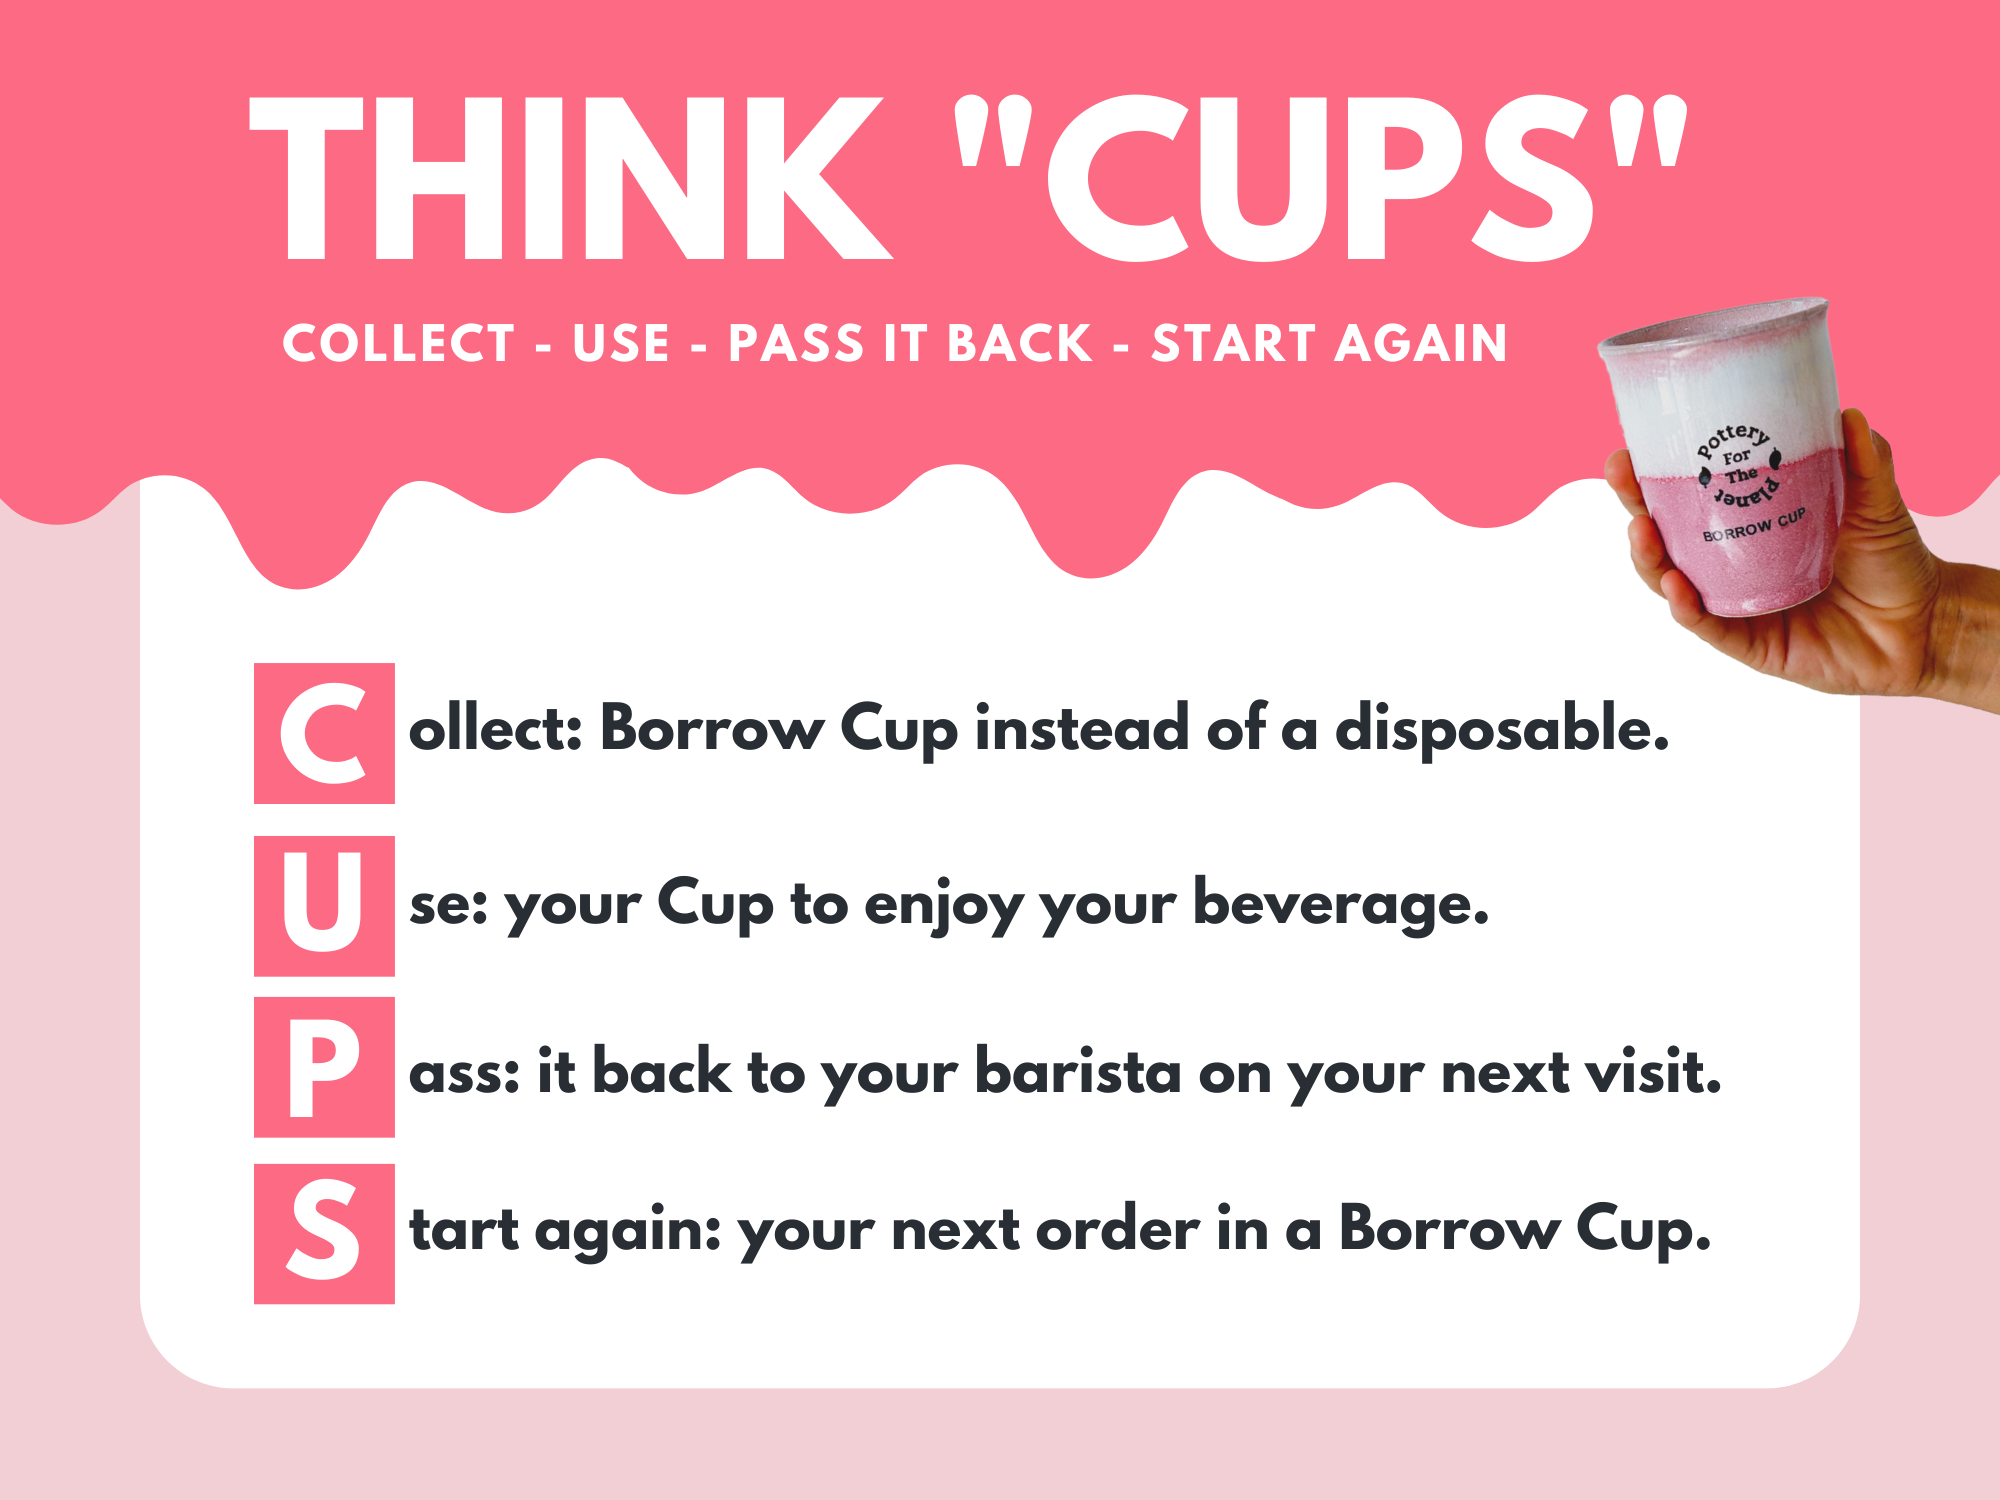 How Do Borrow Cups Work?